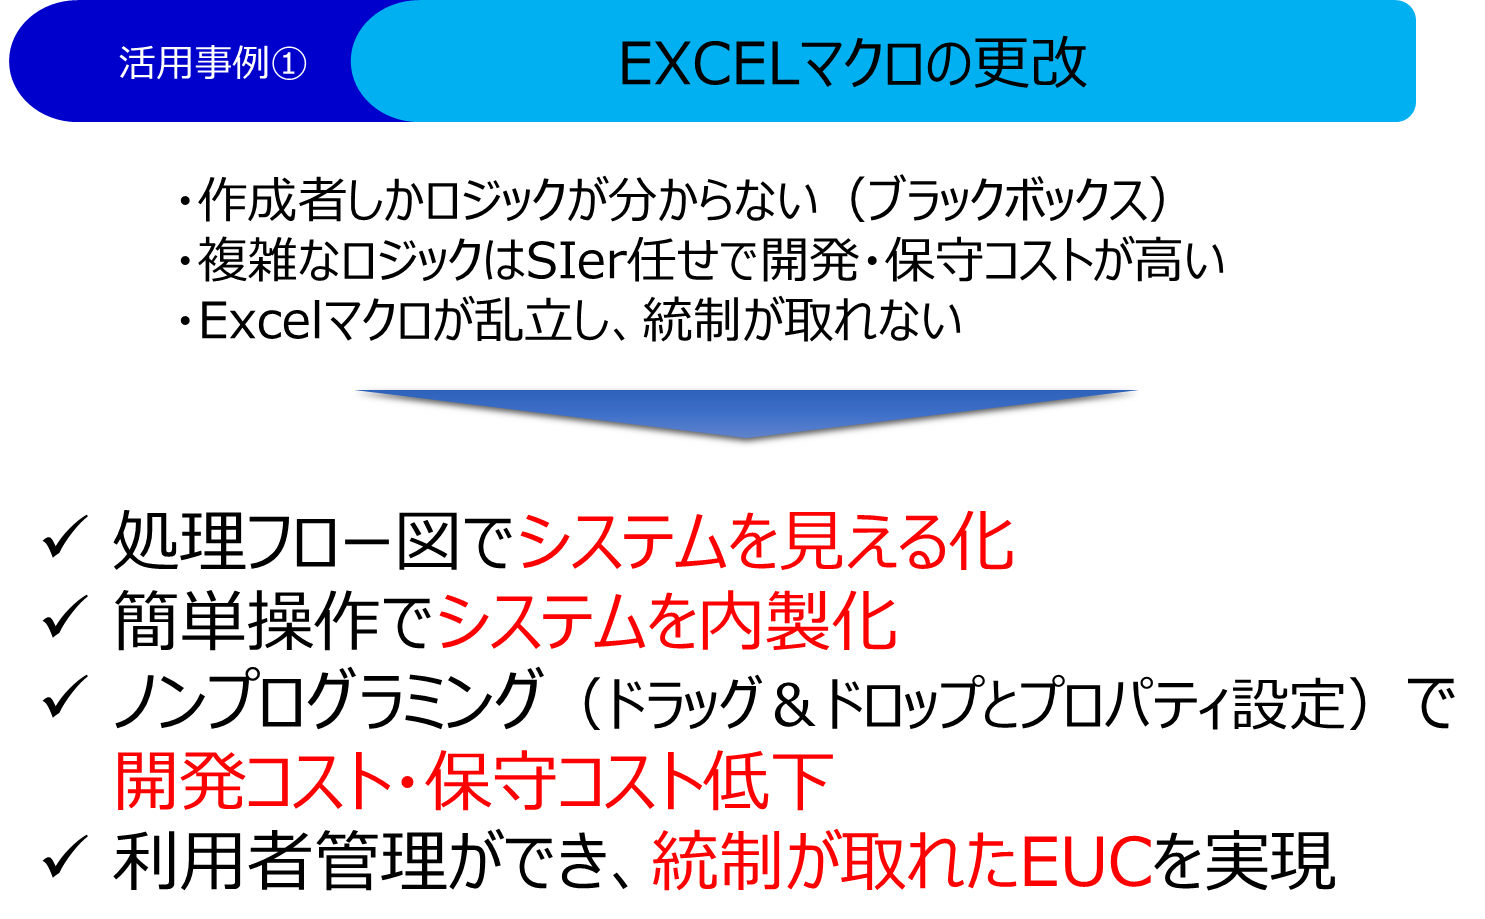 Excelマクロの更改による業務効率化の実現